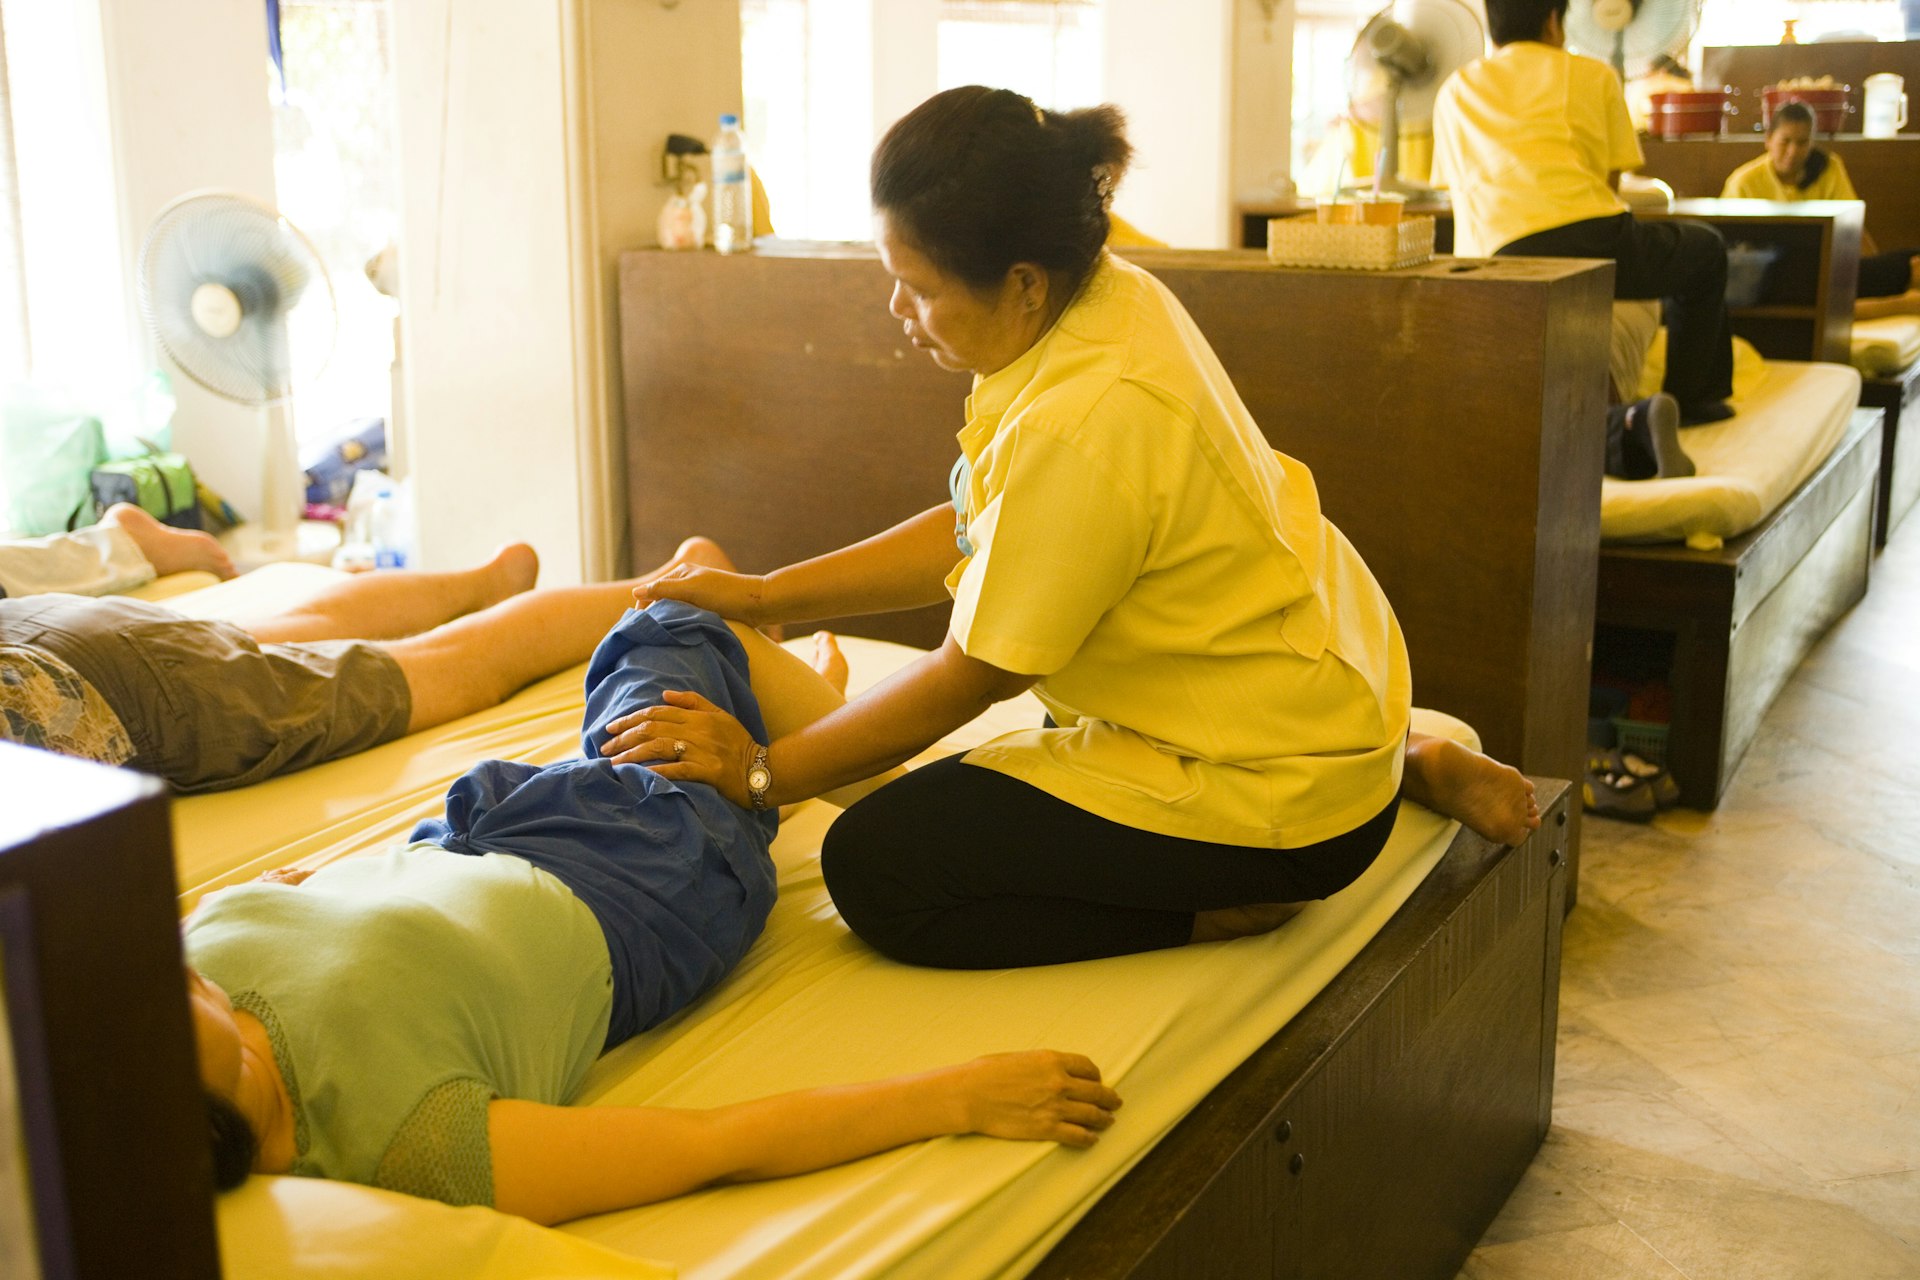 A Thai masseuse at work at Wat Po, Ko Ratanakosin in Bangkok, Thailand